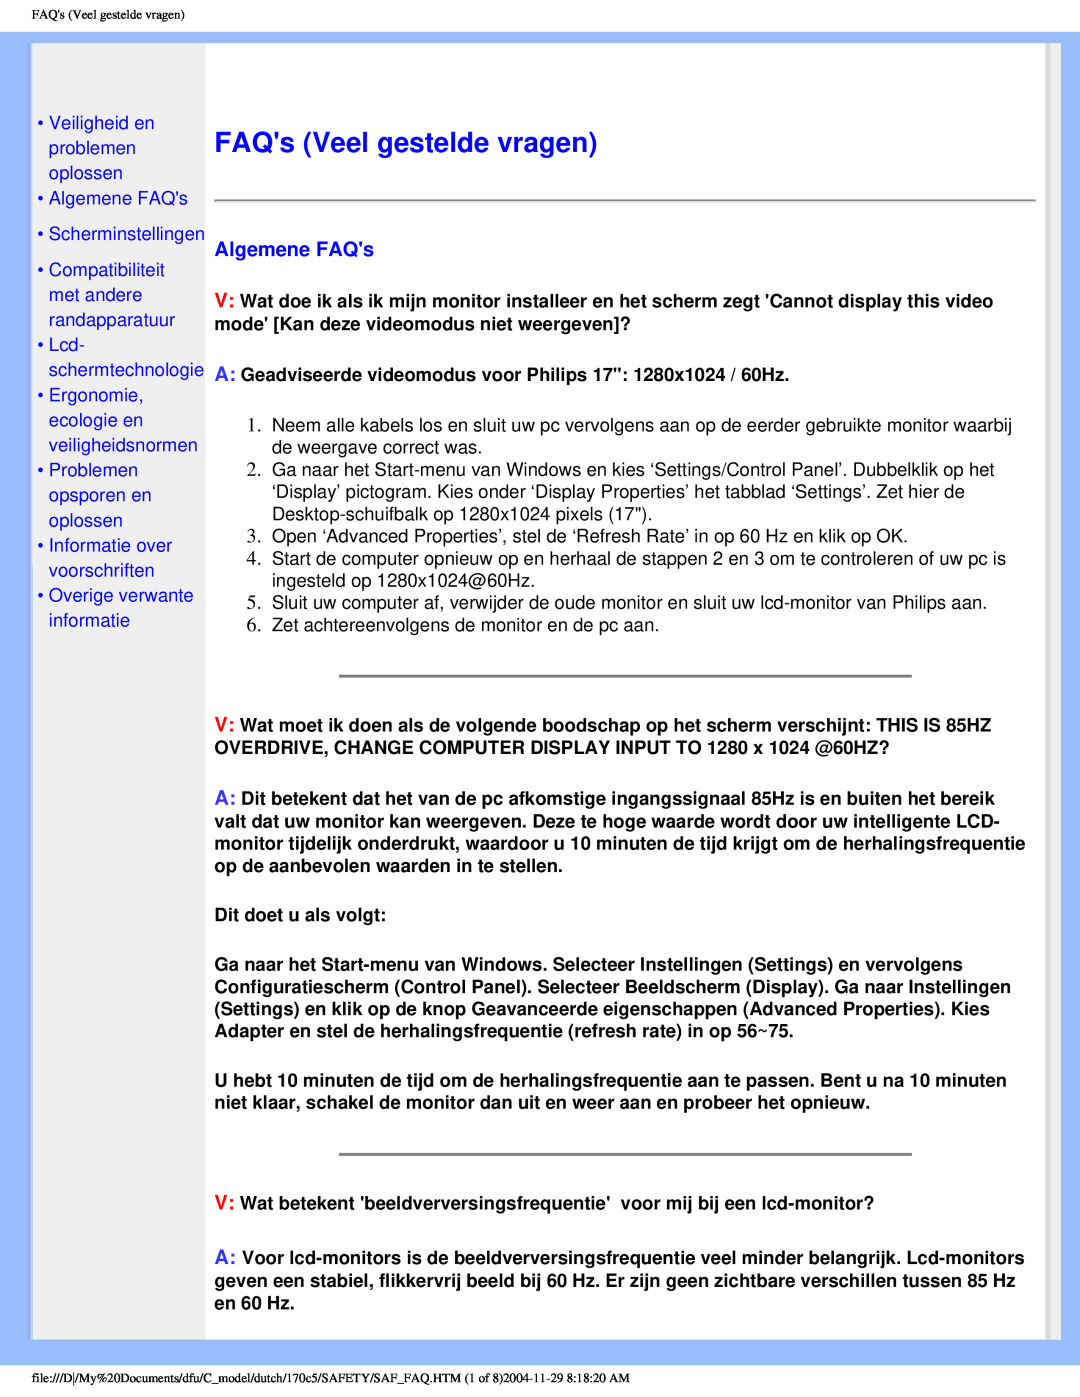 Philips 170C5 user manual FAQs Veel gestelde vragen, Veiligheid en problemen oplossen Algemene FAQs Scherminstellingen 